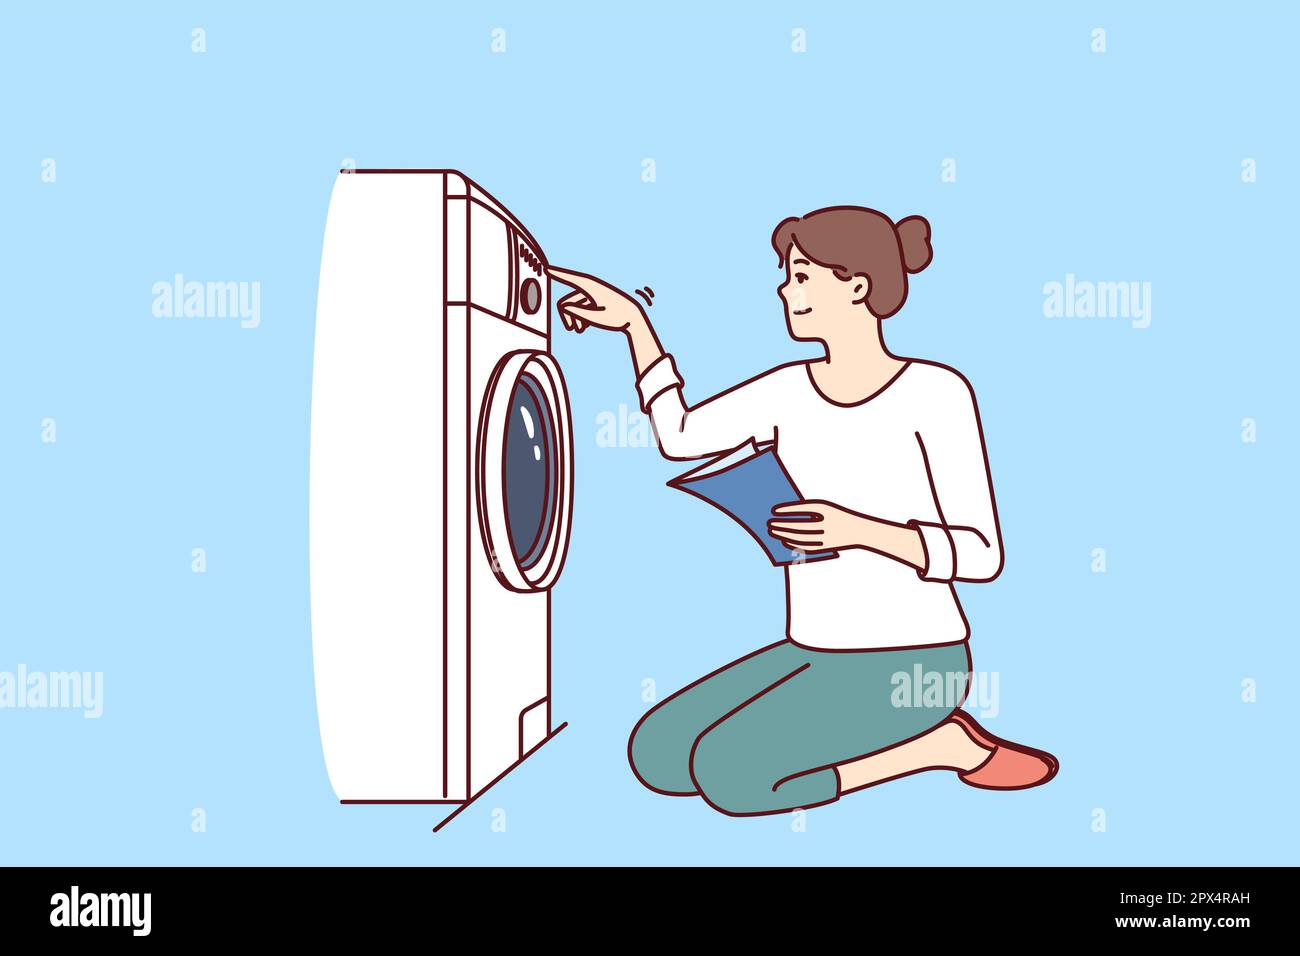 Die Frau schaltet die Waschmaschine auf Knien ein und gibt Anweisungen auf  Papier mit Regeln für die Benutzung der Geräte. Eine lässige junge Hausfrau  mit Lächeln baut nach dem manuellen Lernen eine